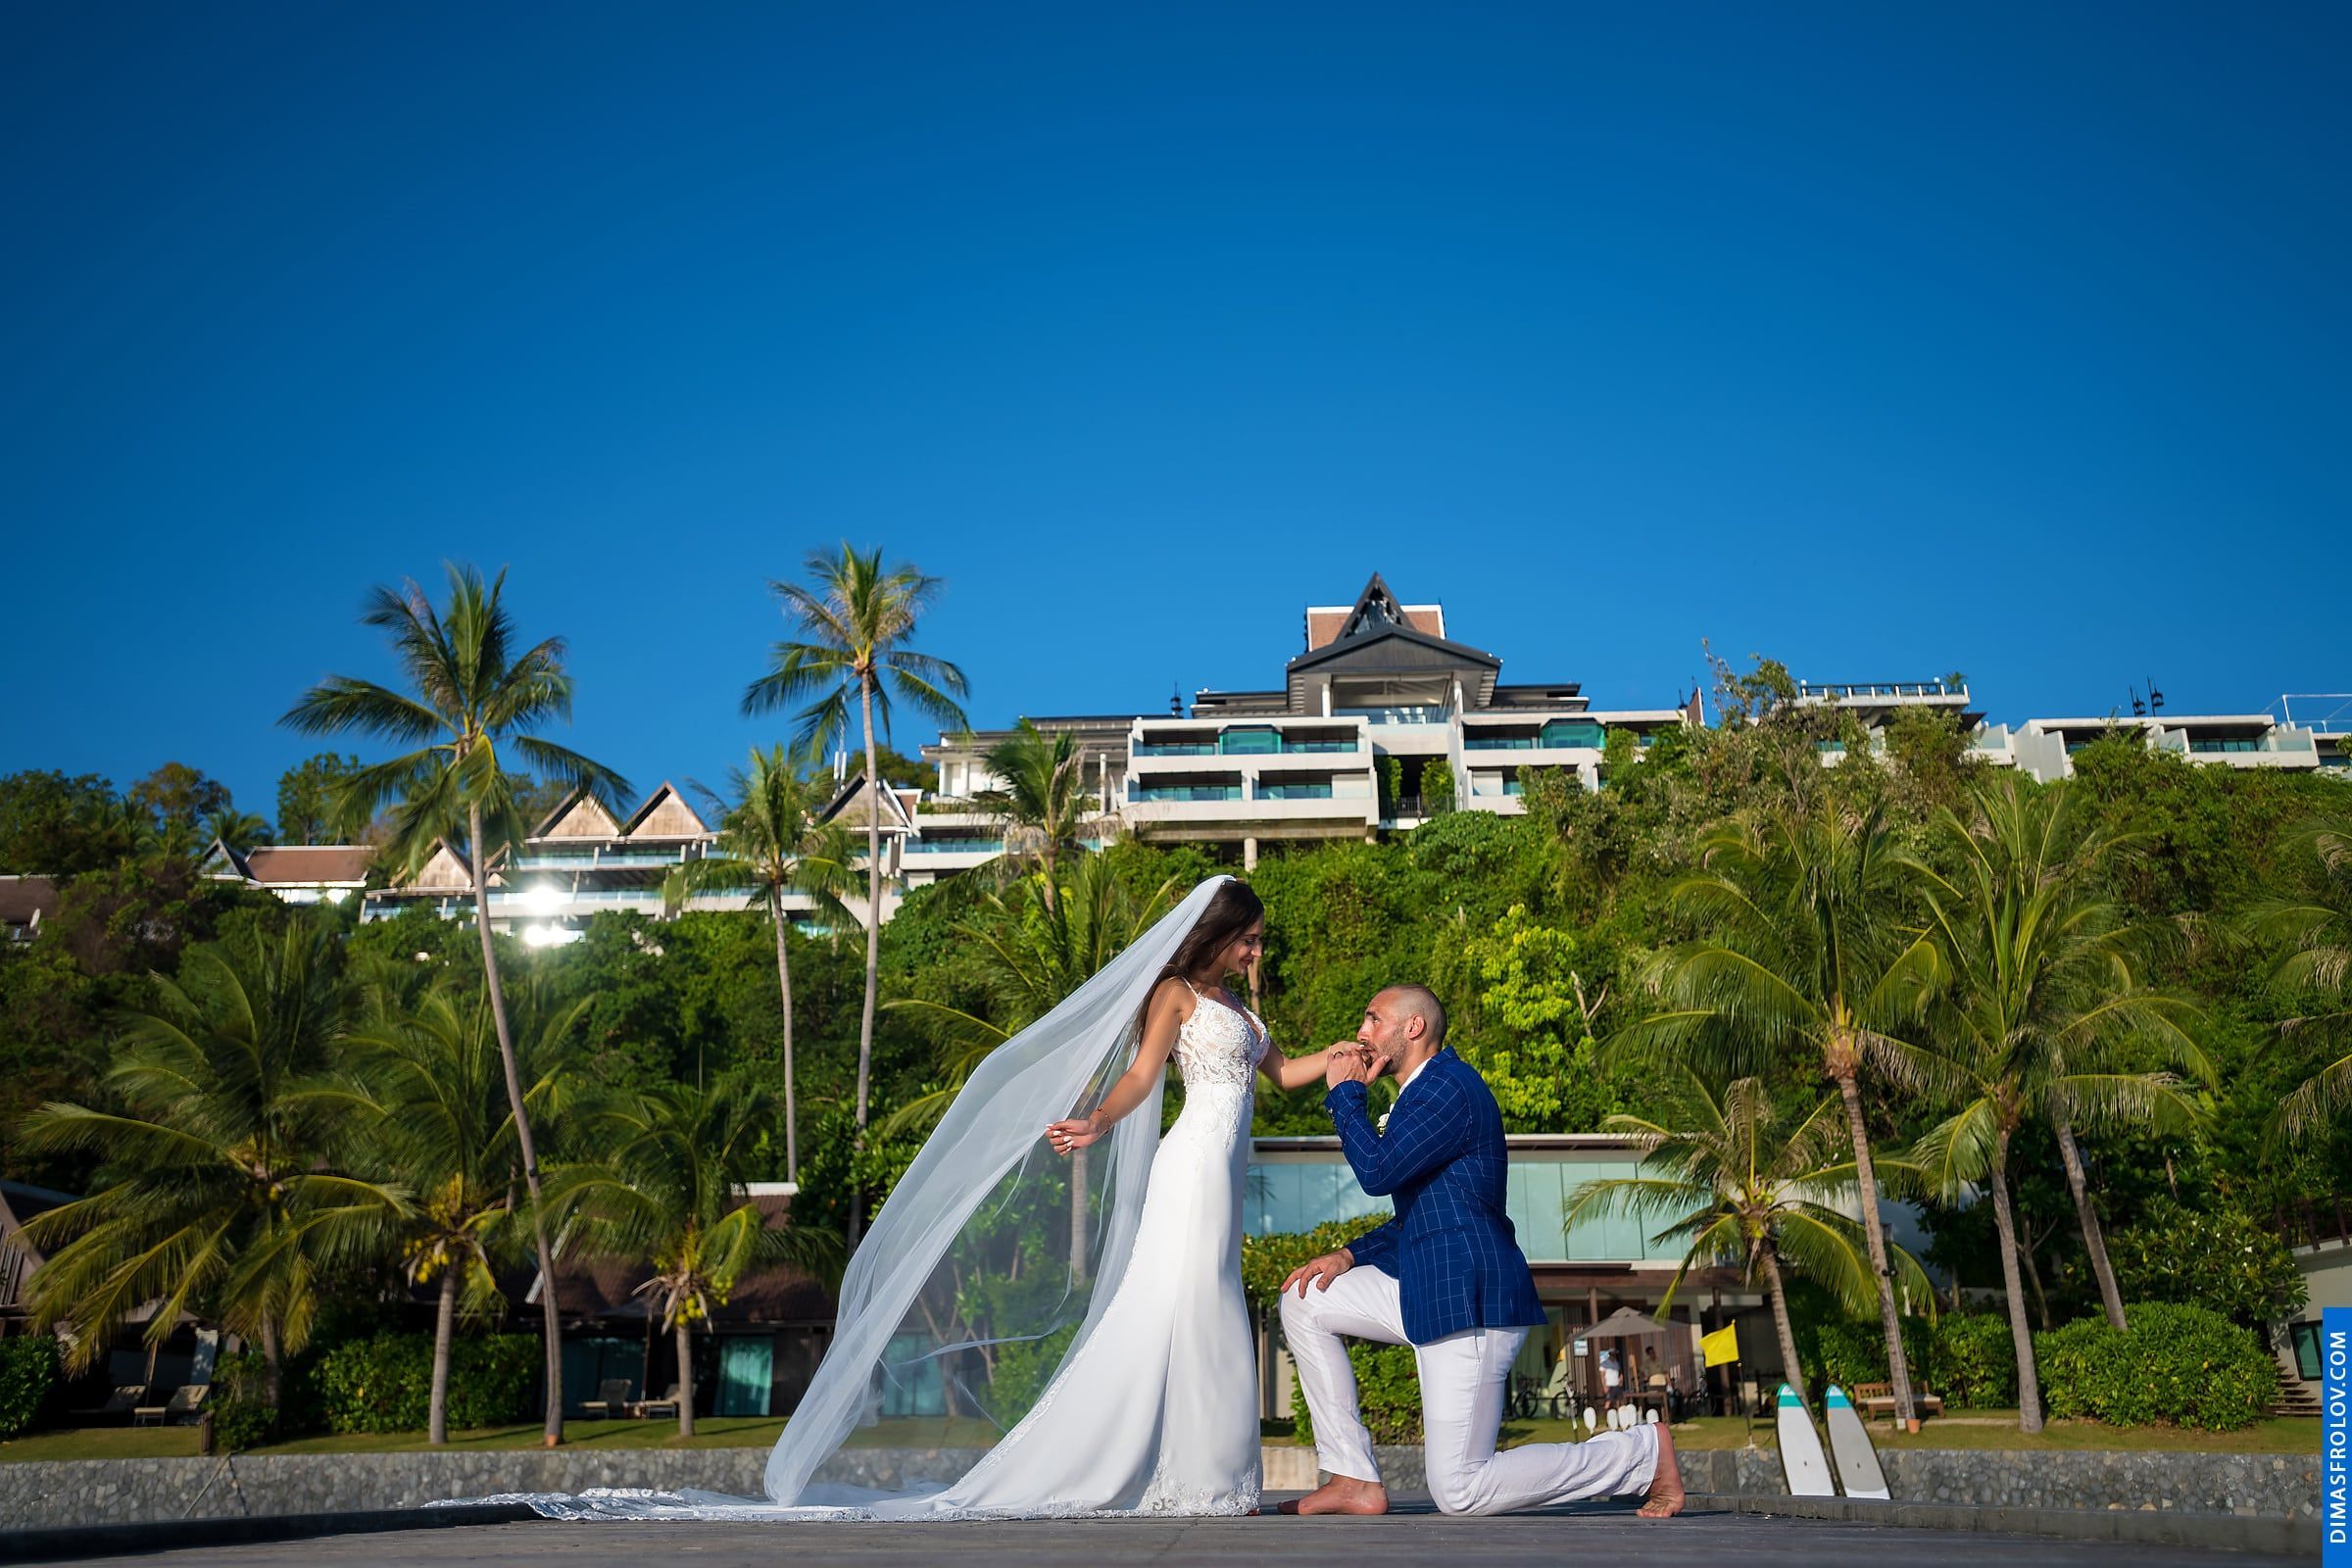 พิธีแต่งงาน ณ โรงแรมอินเตอร์คอนติเนนตัล เกาะสมุย - Natalie & Simon. บาทต่อภาพ 48225 (2023-05-04 03:54:37)